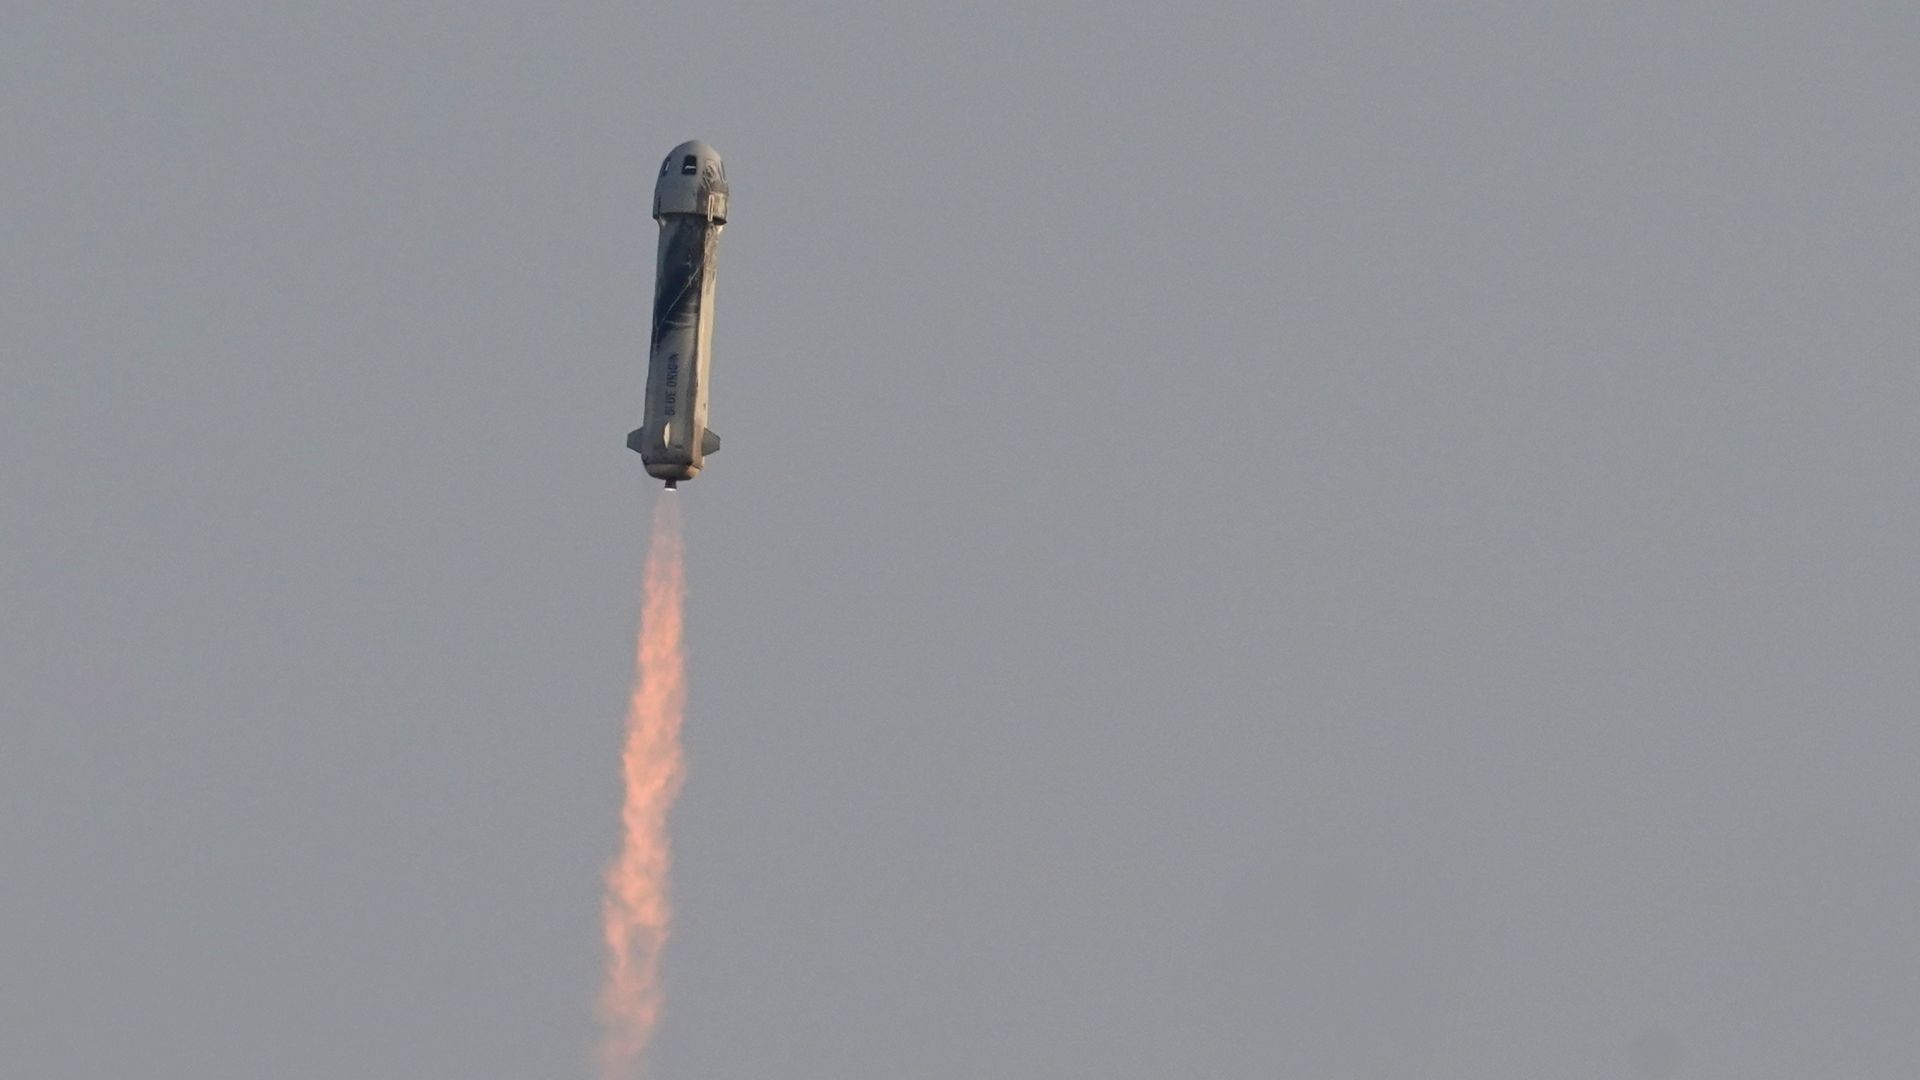 НАСА поздрави Безос за успешния полет с туристи, той възкликна: Най-хубавият ми ден!